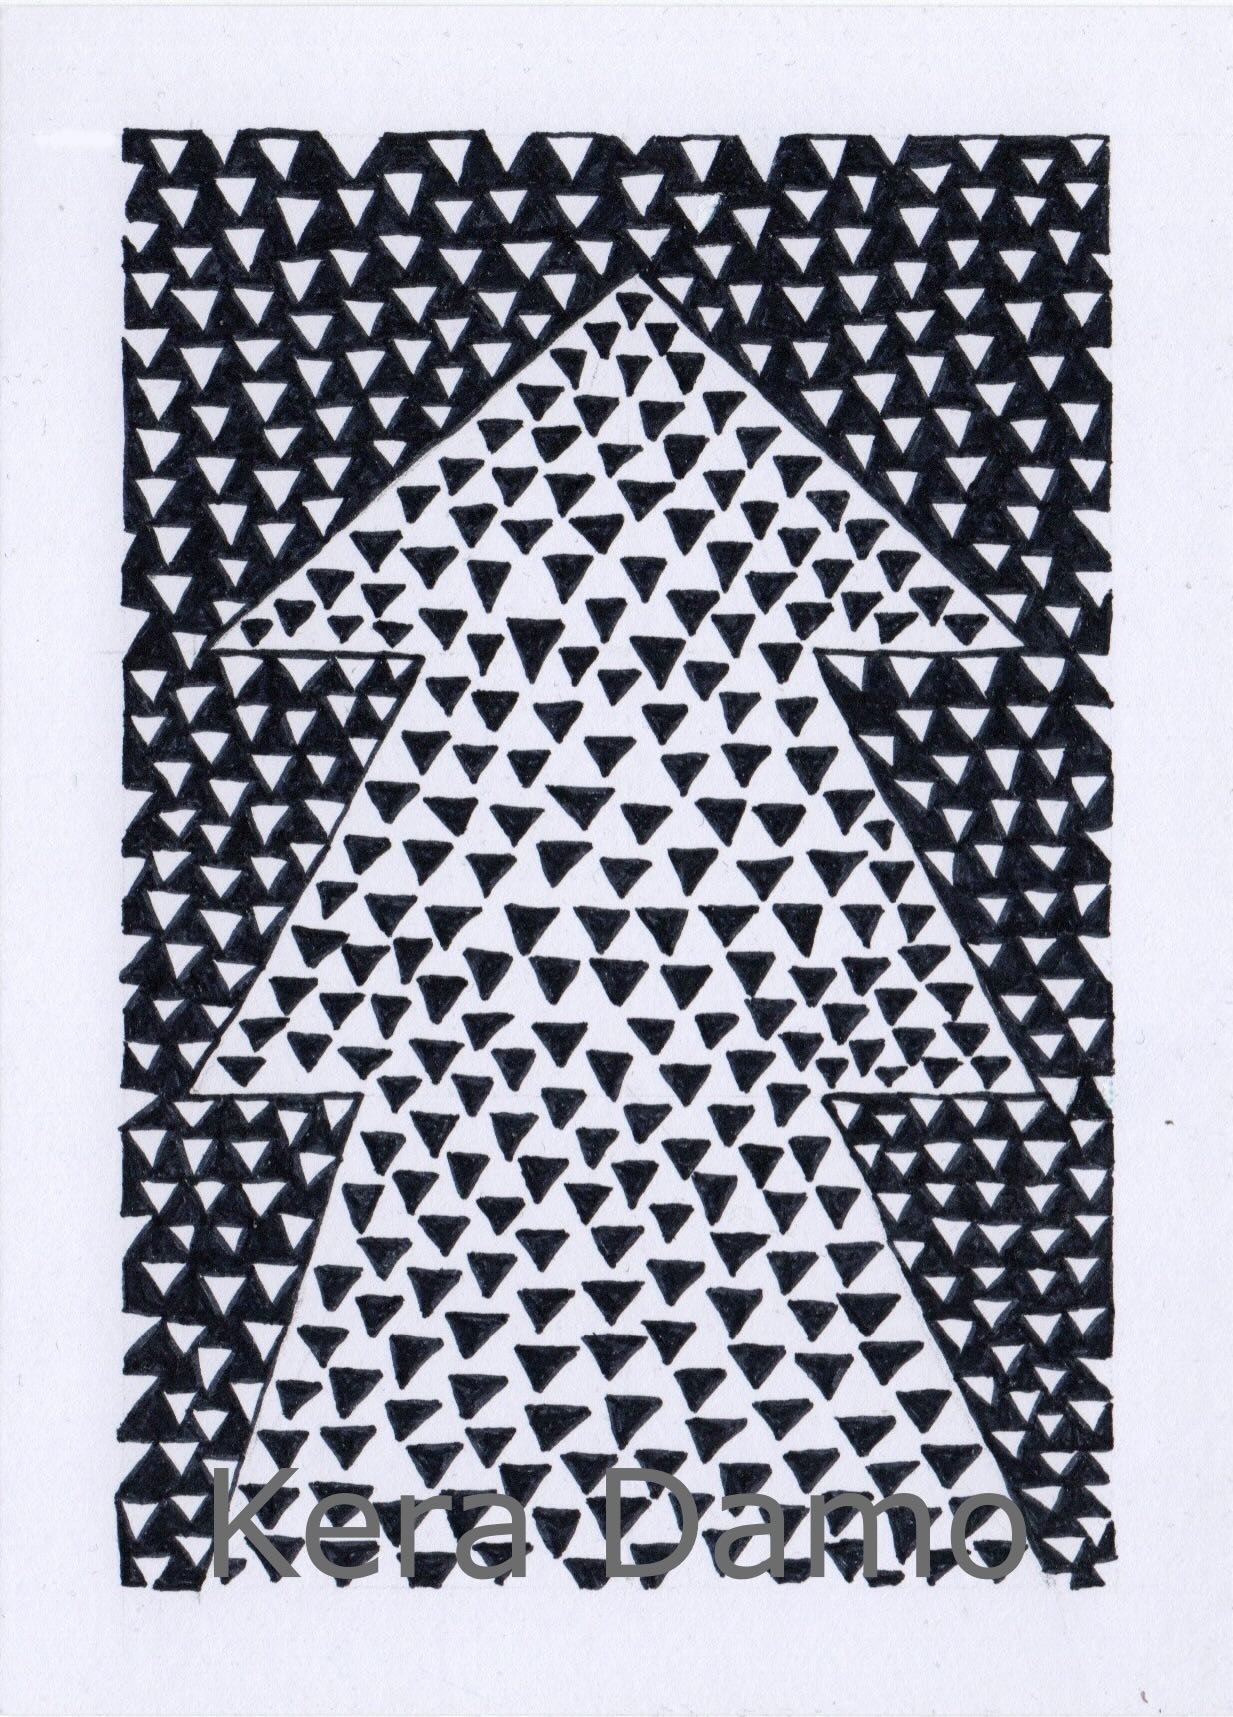 A black and white pen drawing made by visual artist Kera Damo from the Hague / Een zwart wit pentekening van beeldend kunstenaar Kera Damo uit Den Haag